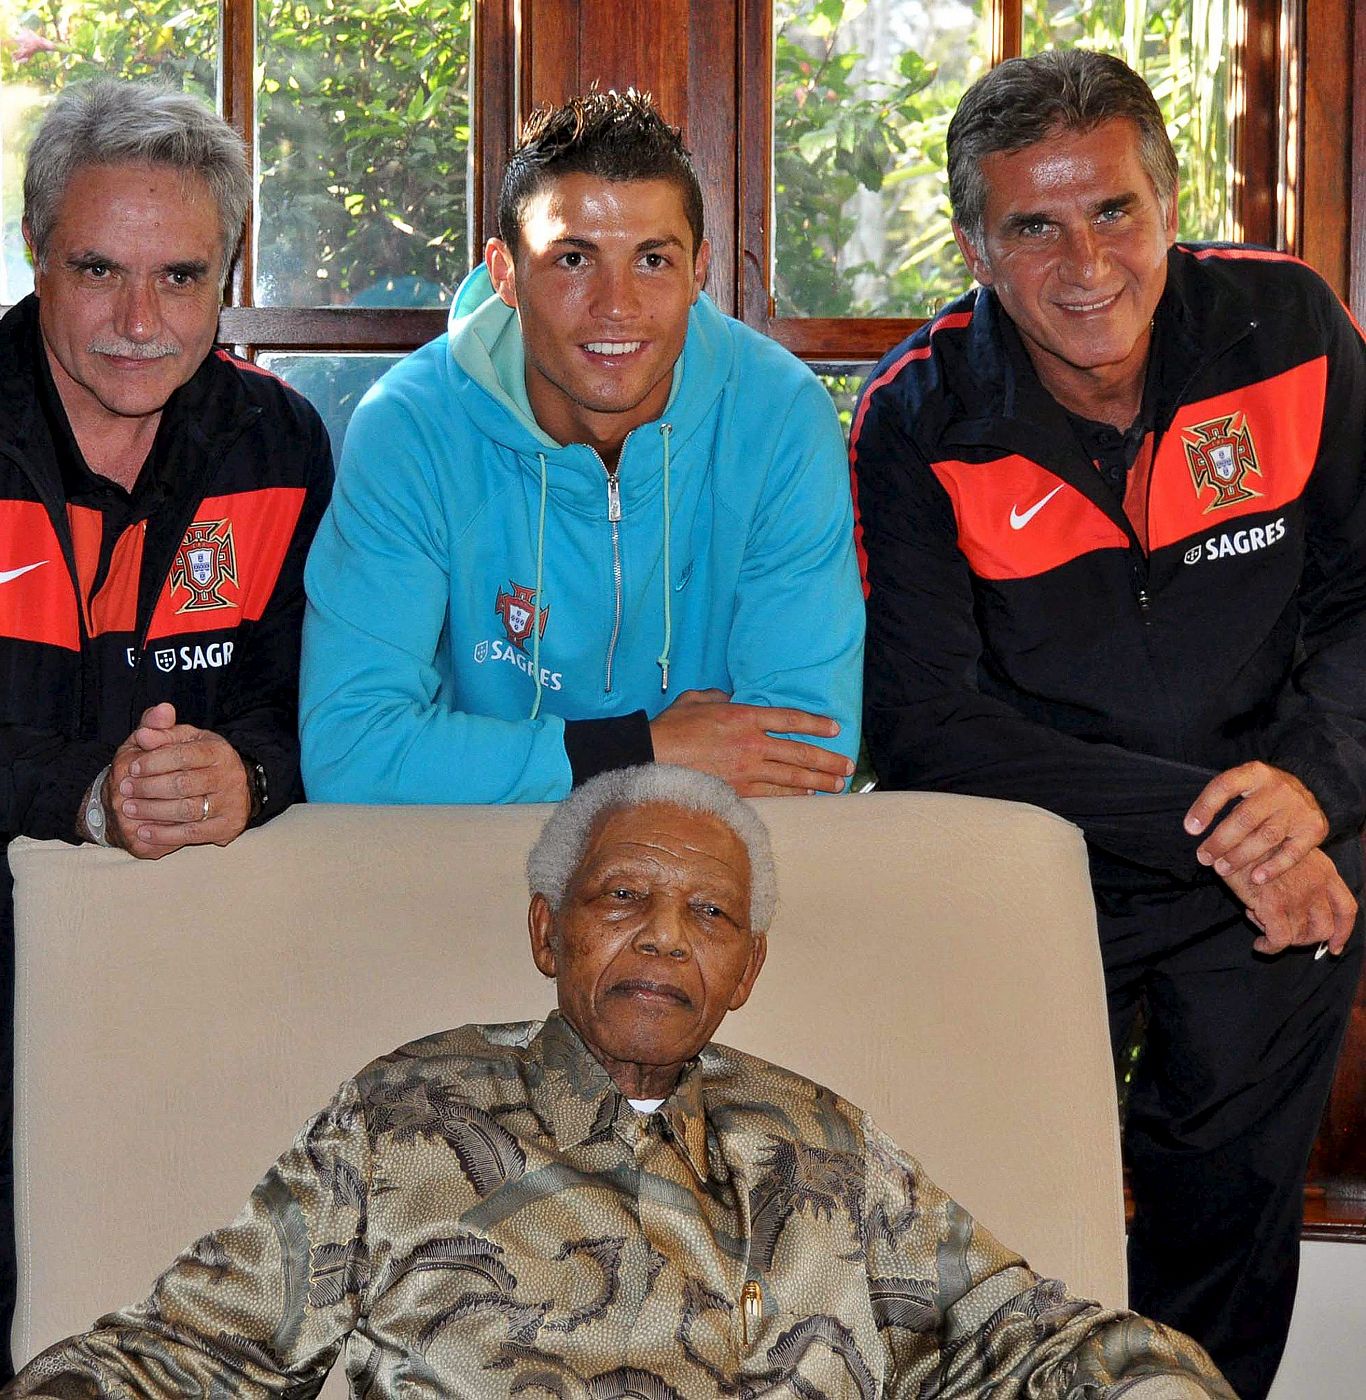 El director deportivo de la selección portuguesa de fútbol, Carlos Godinho, el delantero Cristiano Ronaldo, y el seleccionador Carlos Queiroz posan junto al ex presidente de Sudáfrica y Premio Nobel de la Paz, Nelson Mandela.